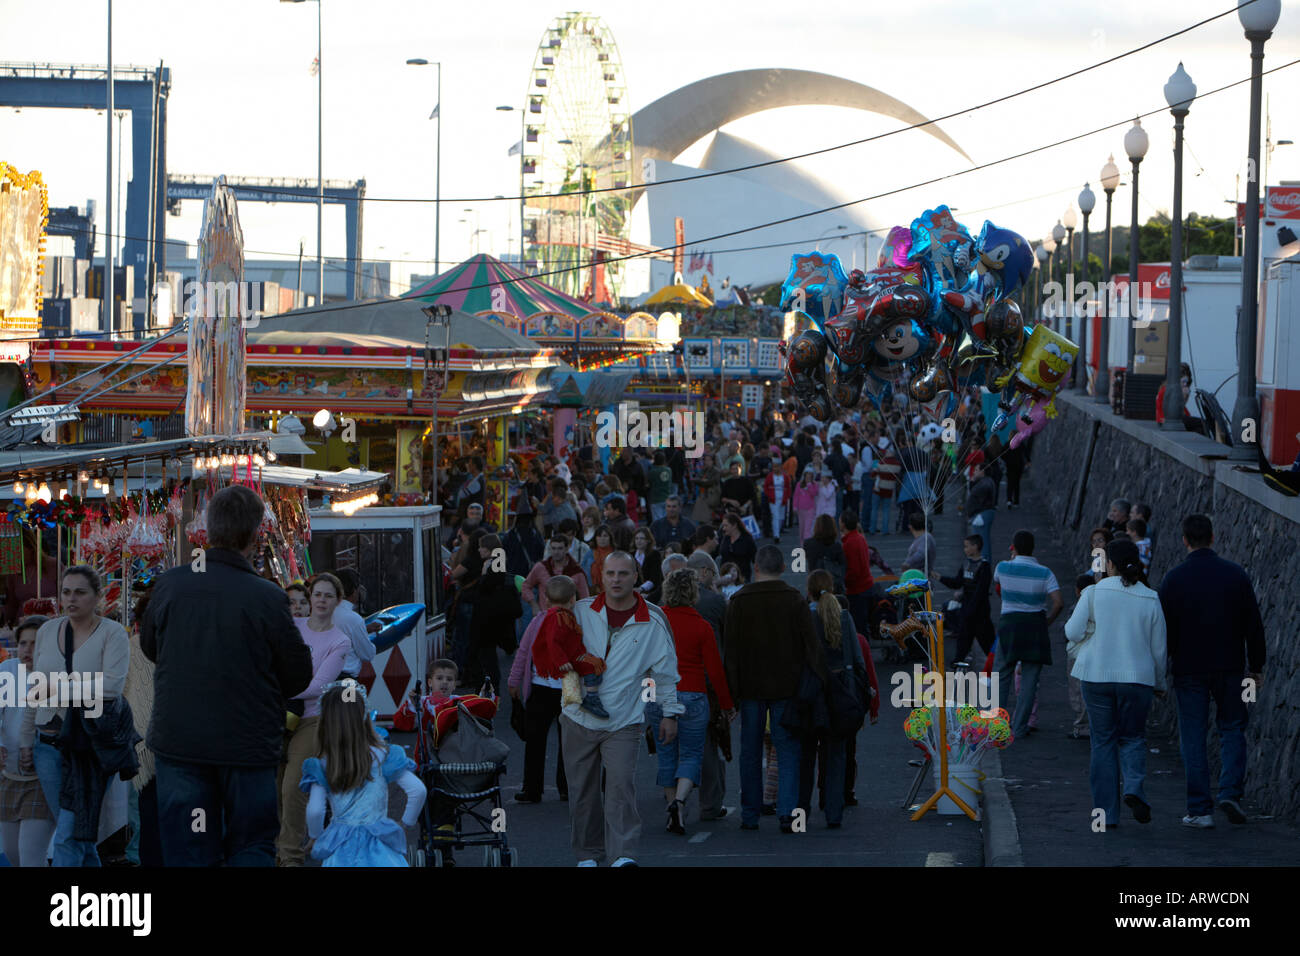 Profitant de la foule carnaval en face de l'Auditorio de Tenerife Santa cruz de tenerife espagne Banque D'Images